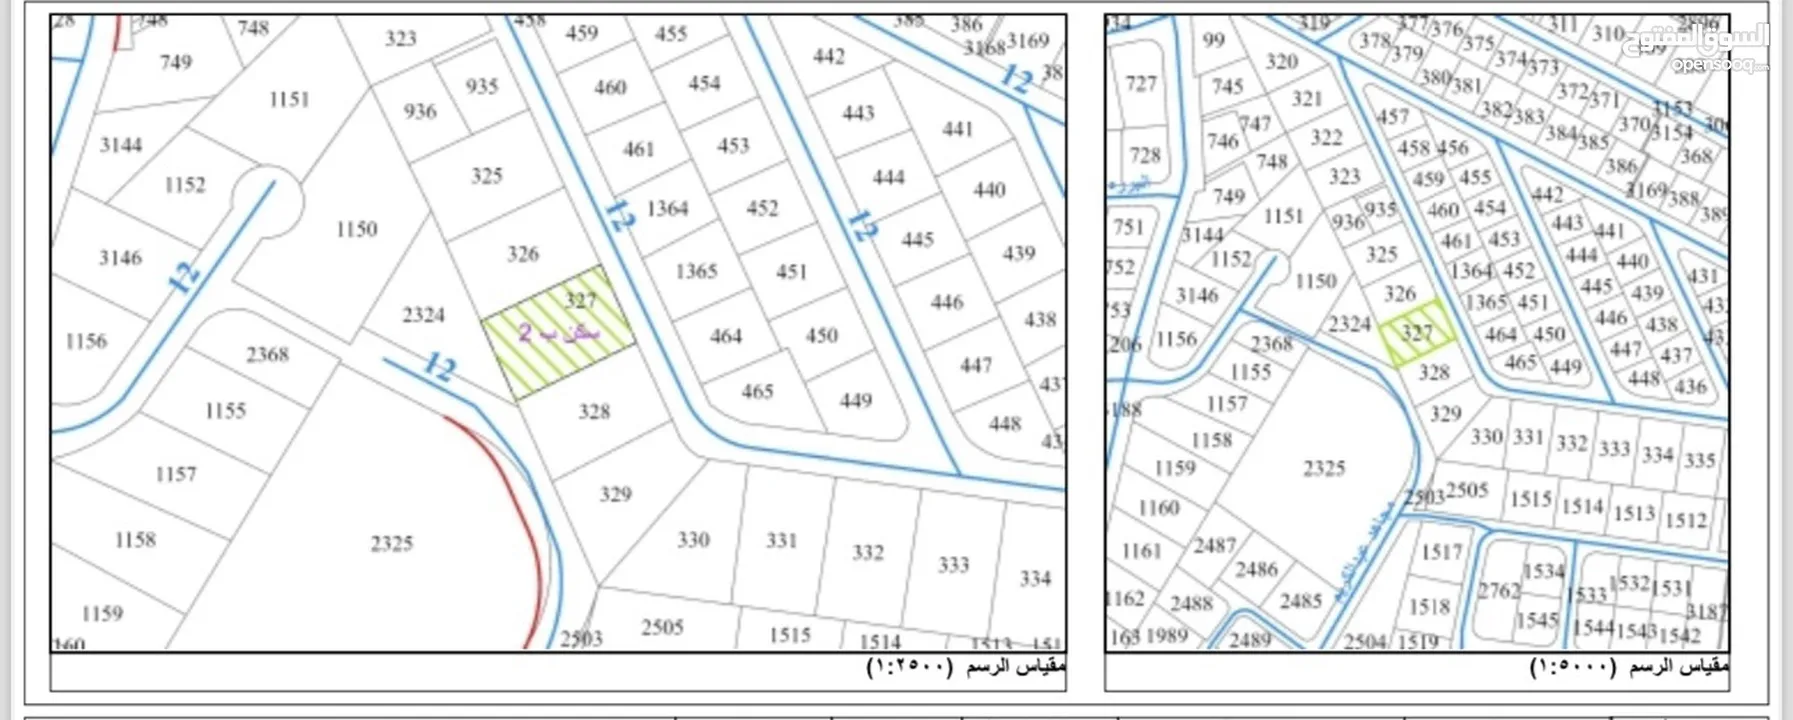 قطعة أرض مميزه في اجمل مناطق جنوب عمان  جبل الحديد منطقة فلل بجانب مضافة الحديد ومسجد حفيظة الحديد